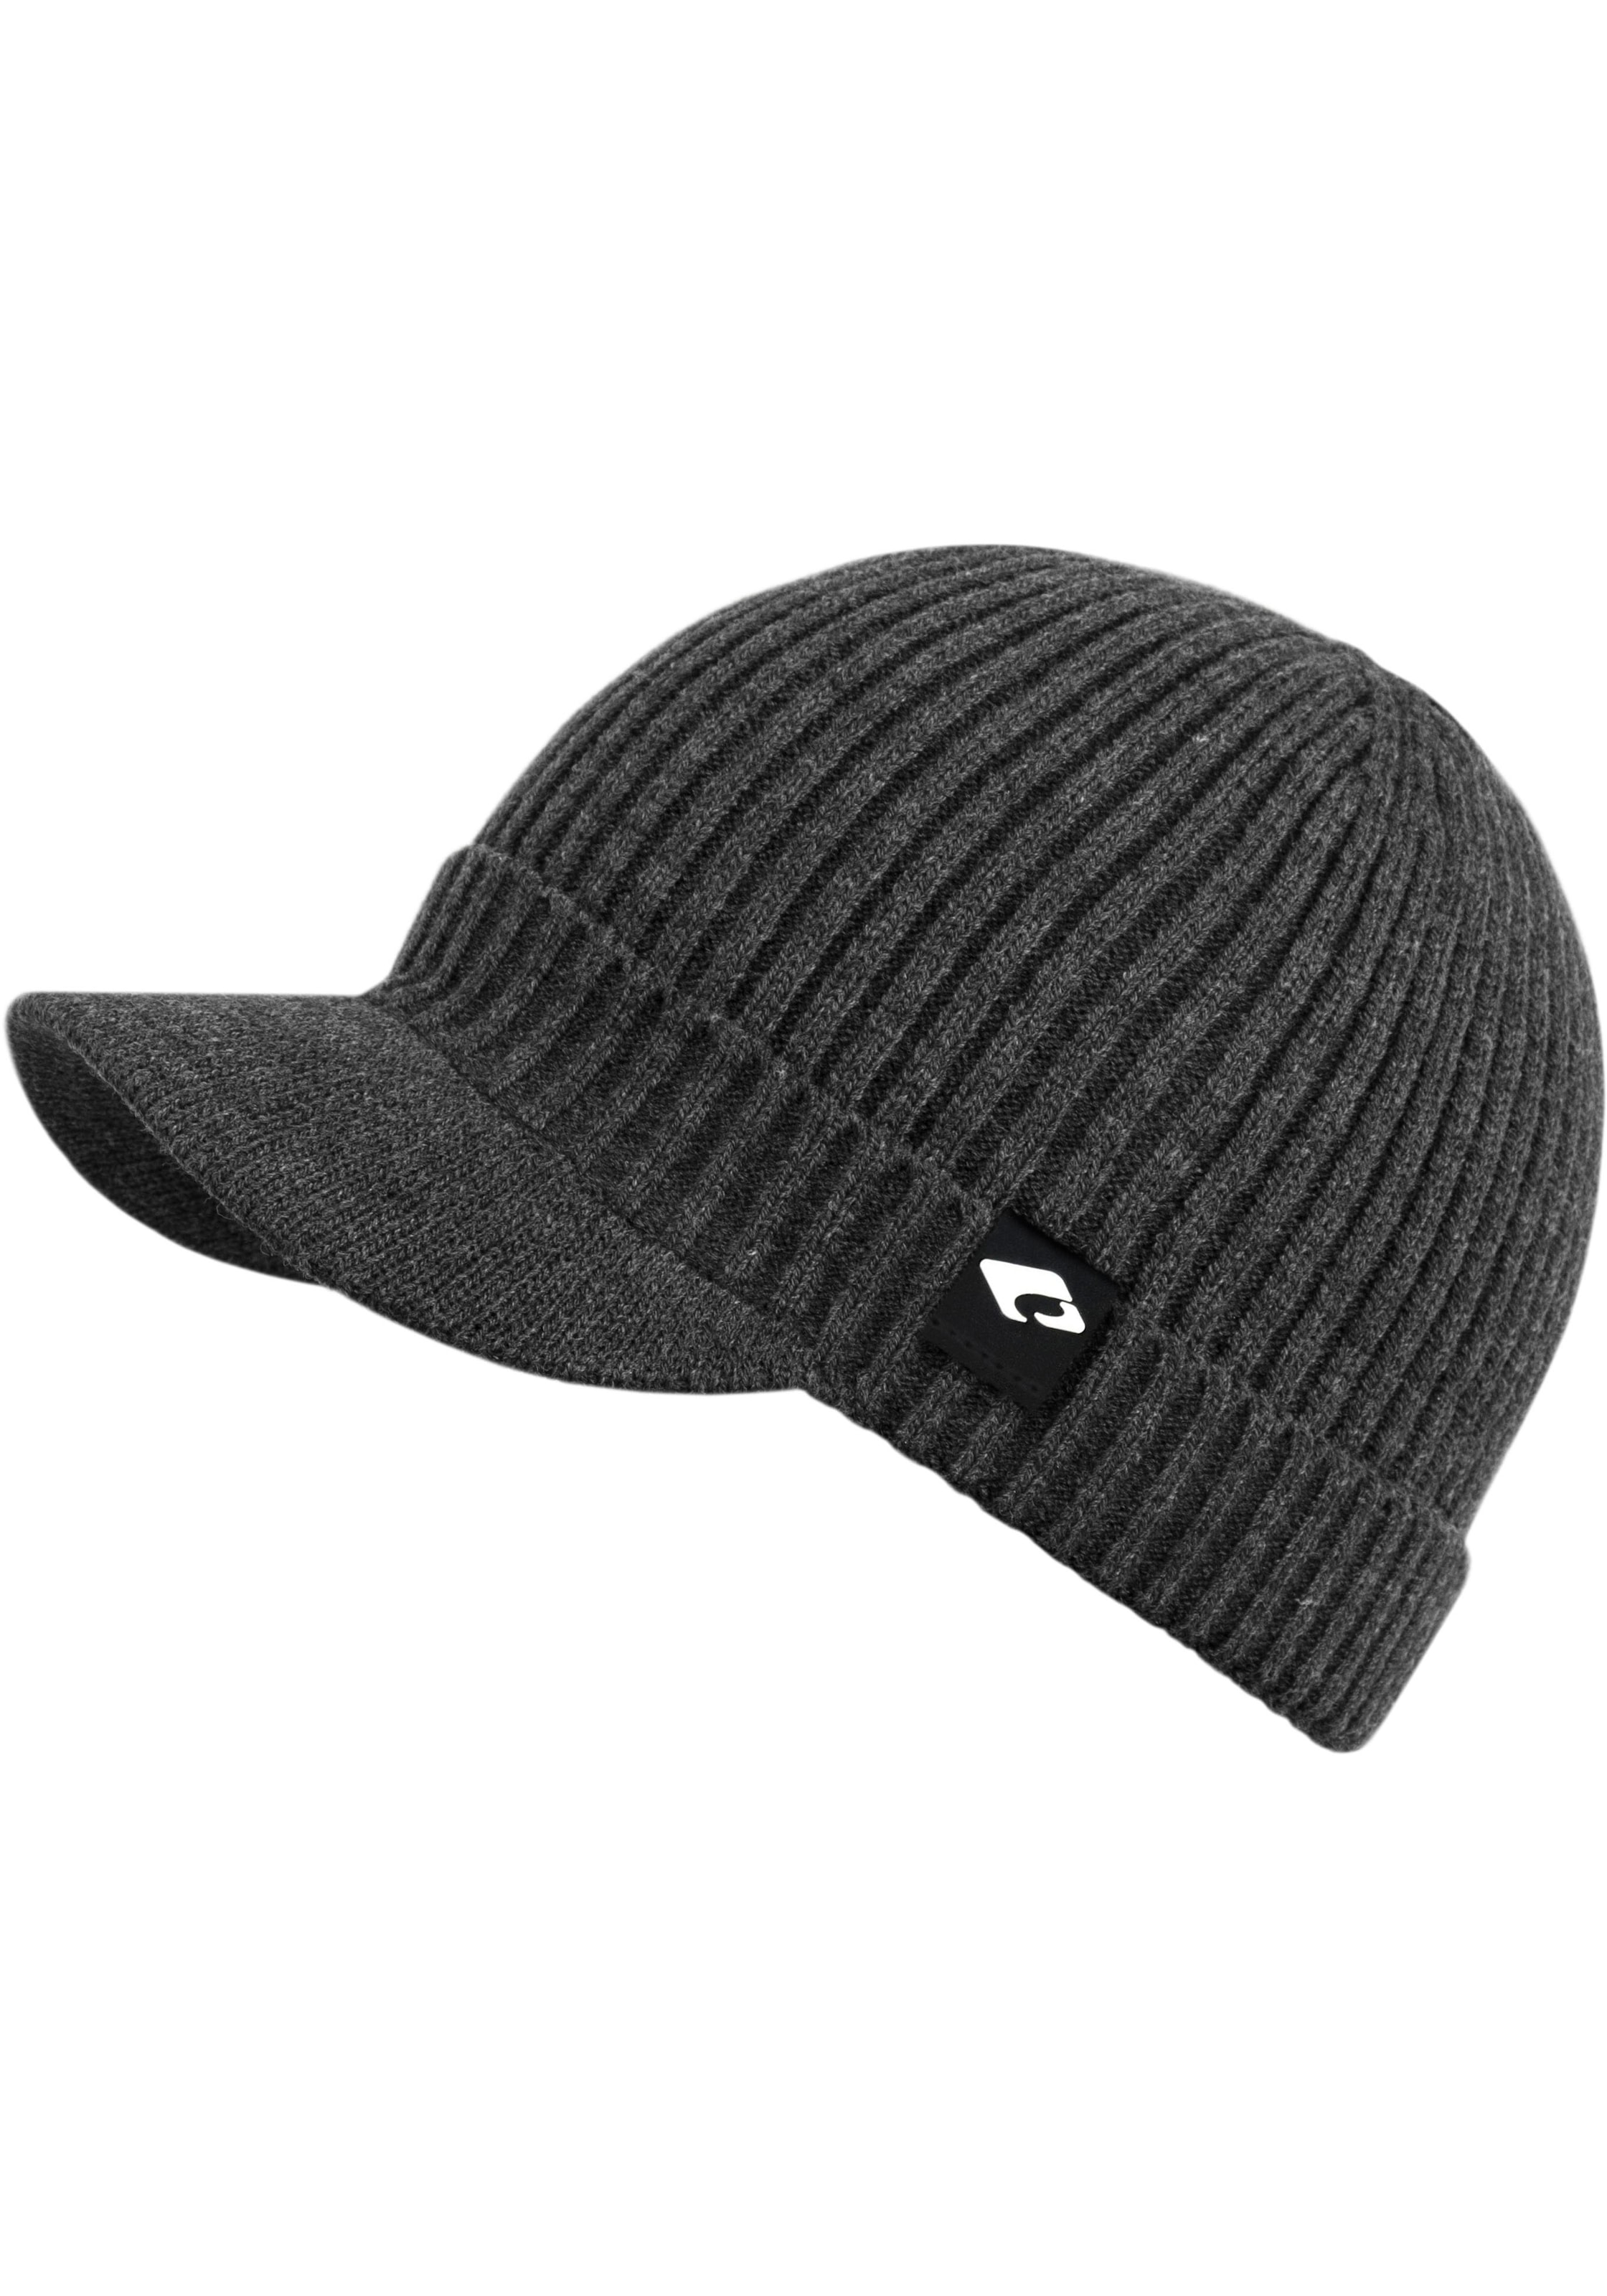 chillouts Strickmütze OTTO Benno bei Hat«, online Hat »Benno shoppen